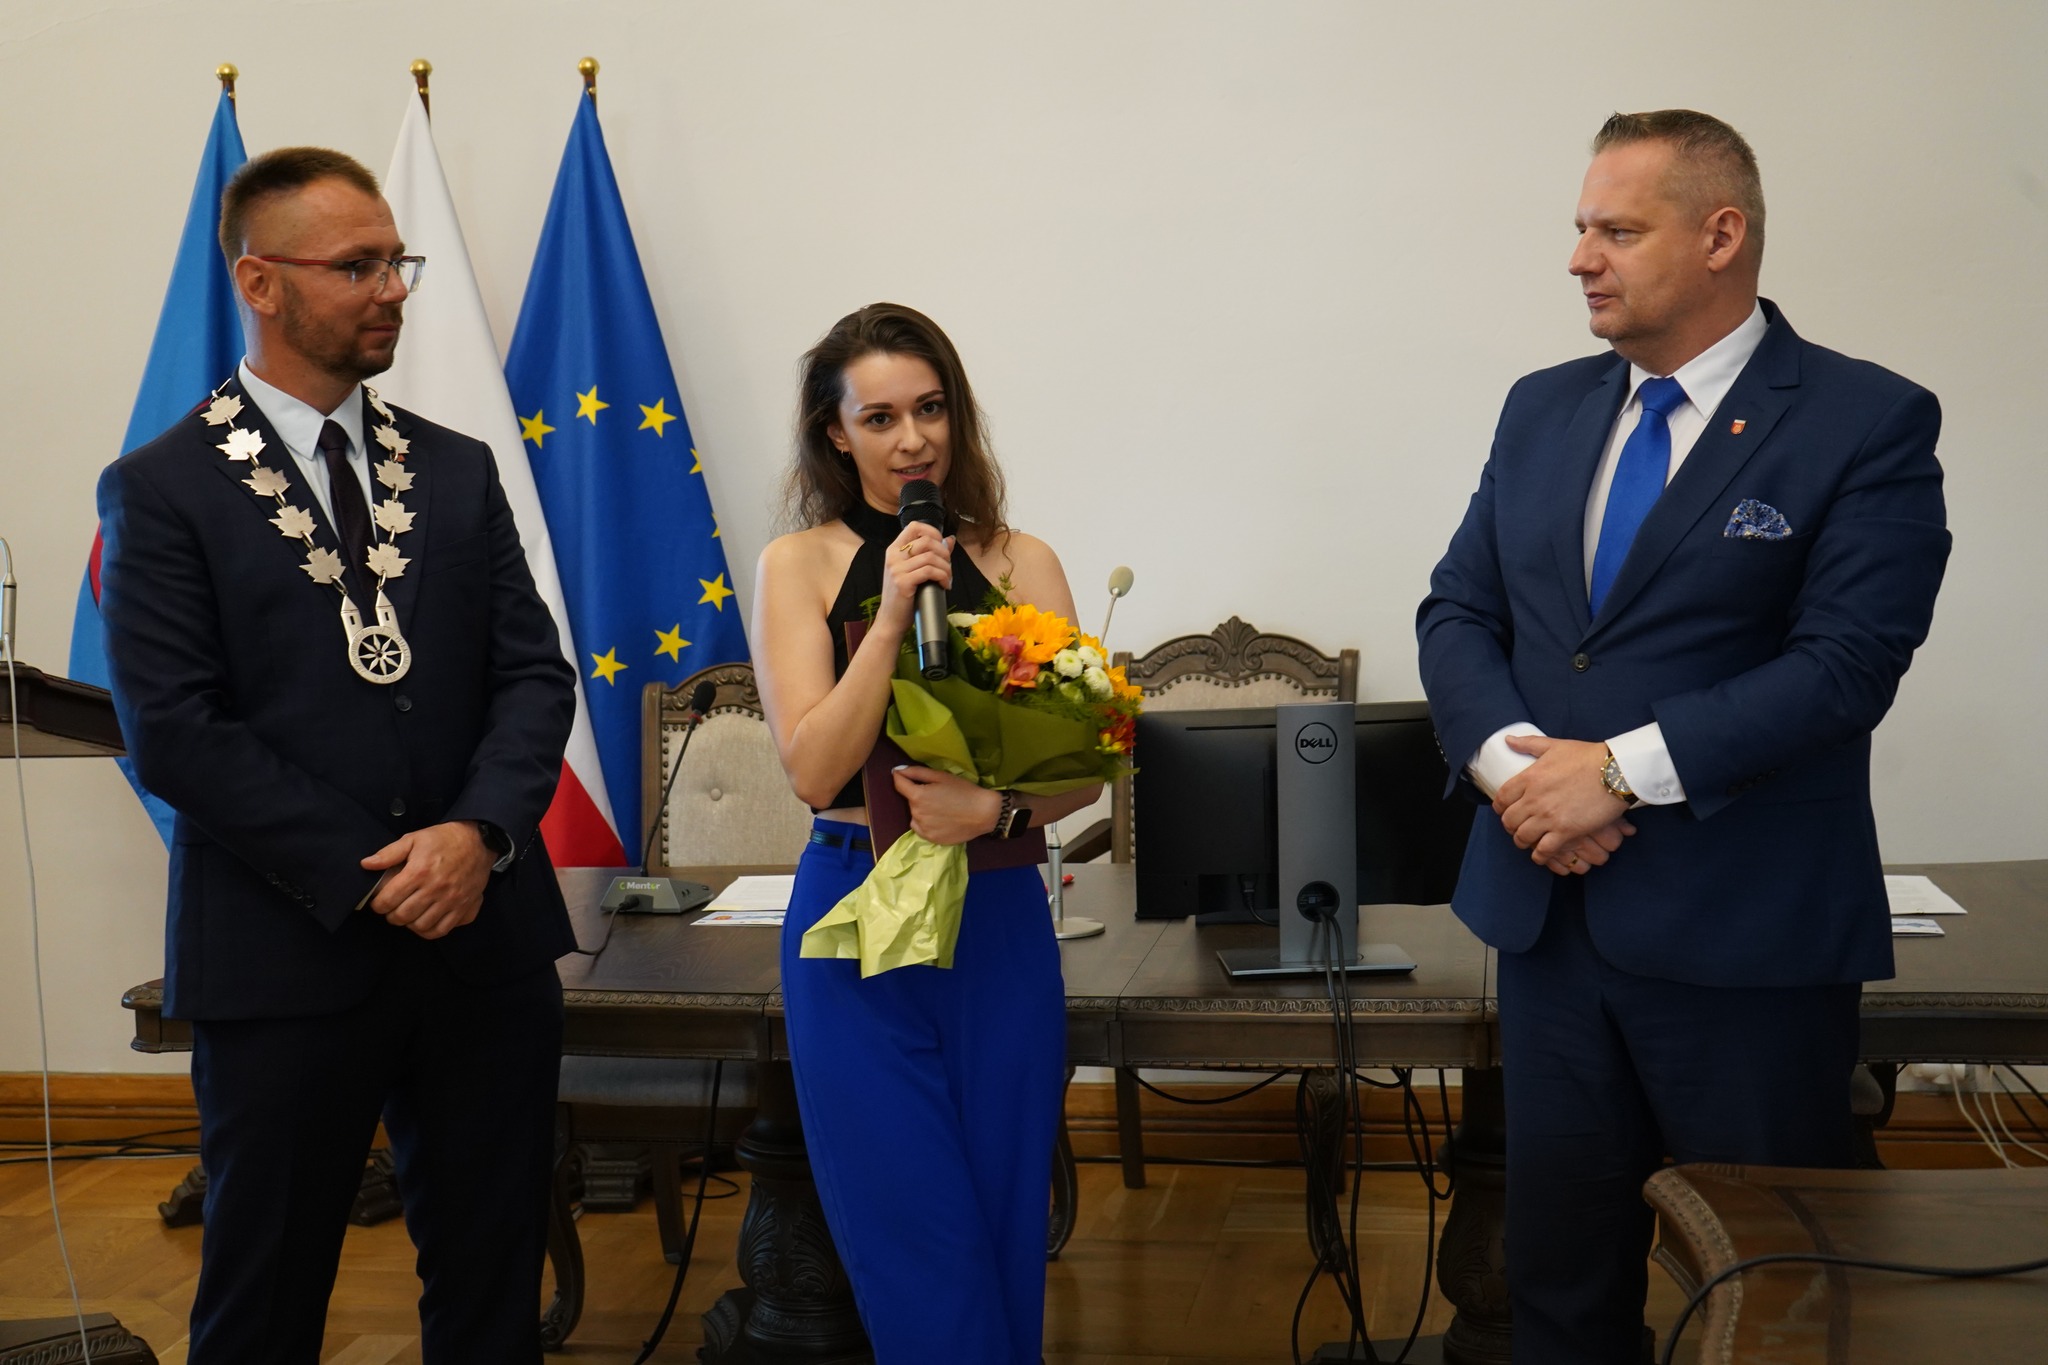 Burmistrz Koła, Przewodniczący Rady Miejskiej oraz wyróżniona Olga Bejm podczas sesji Rady Miejskiej